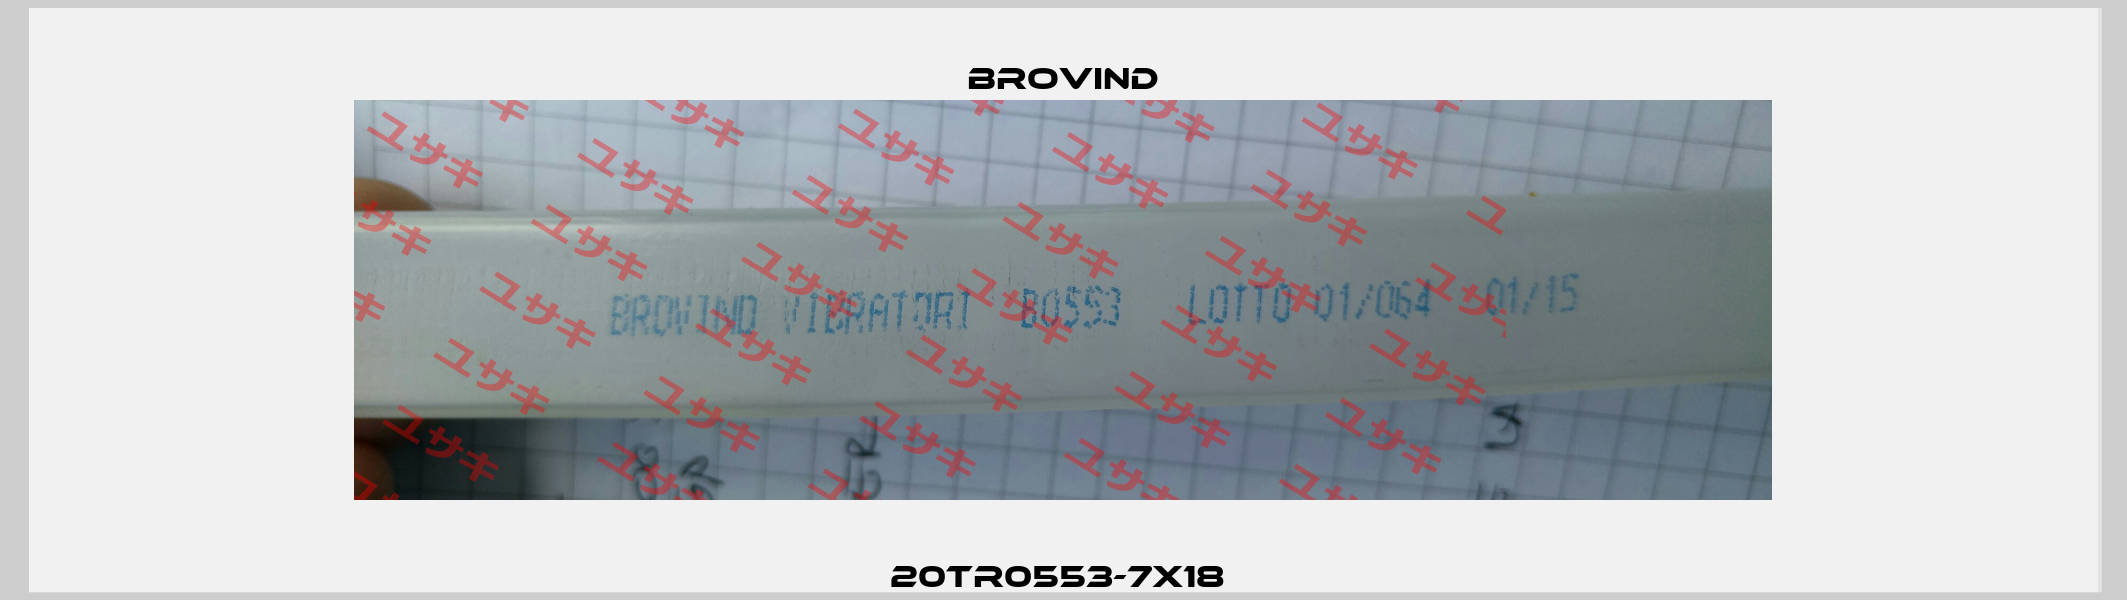 20TR0553-7X18  Brovind